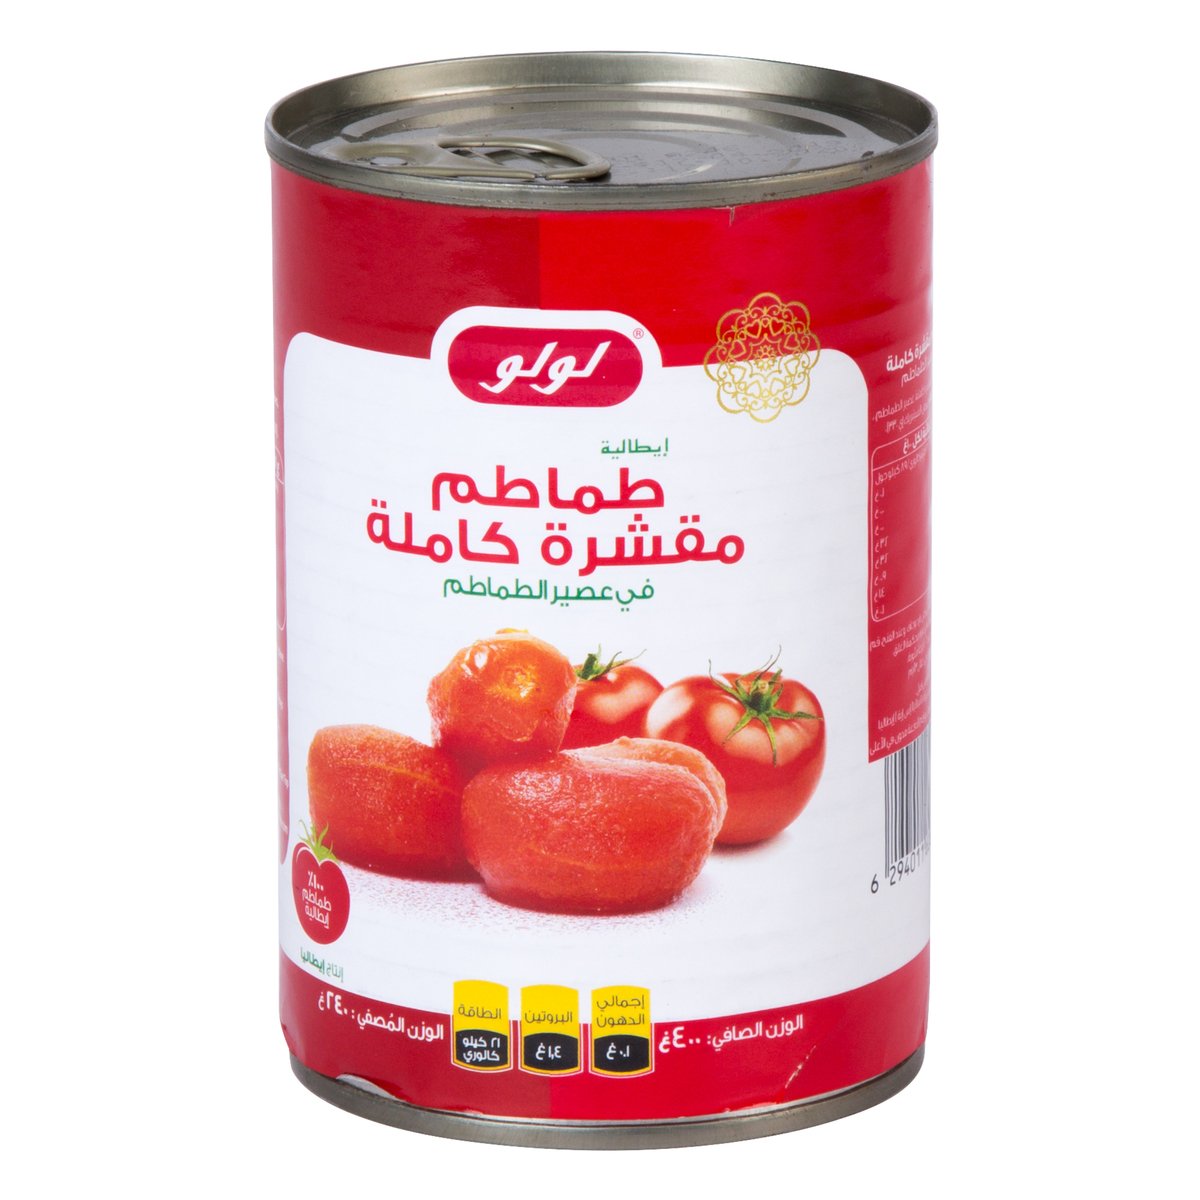 LuLu Whole Peeled Tomatoes in Tomato Juice 400g